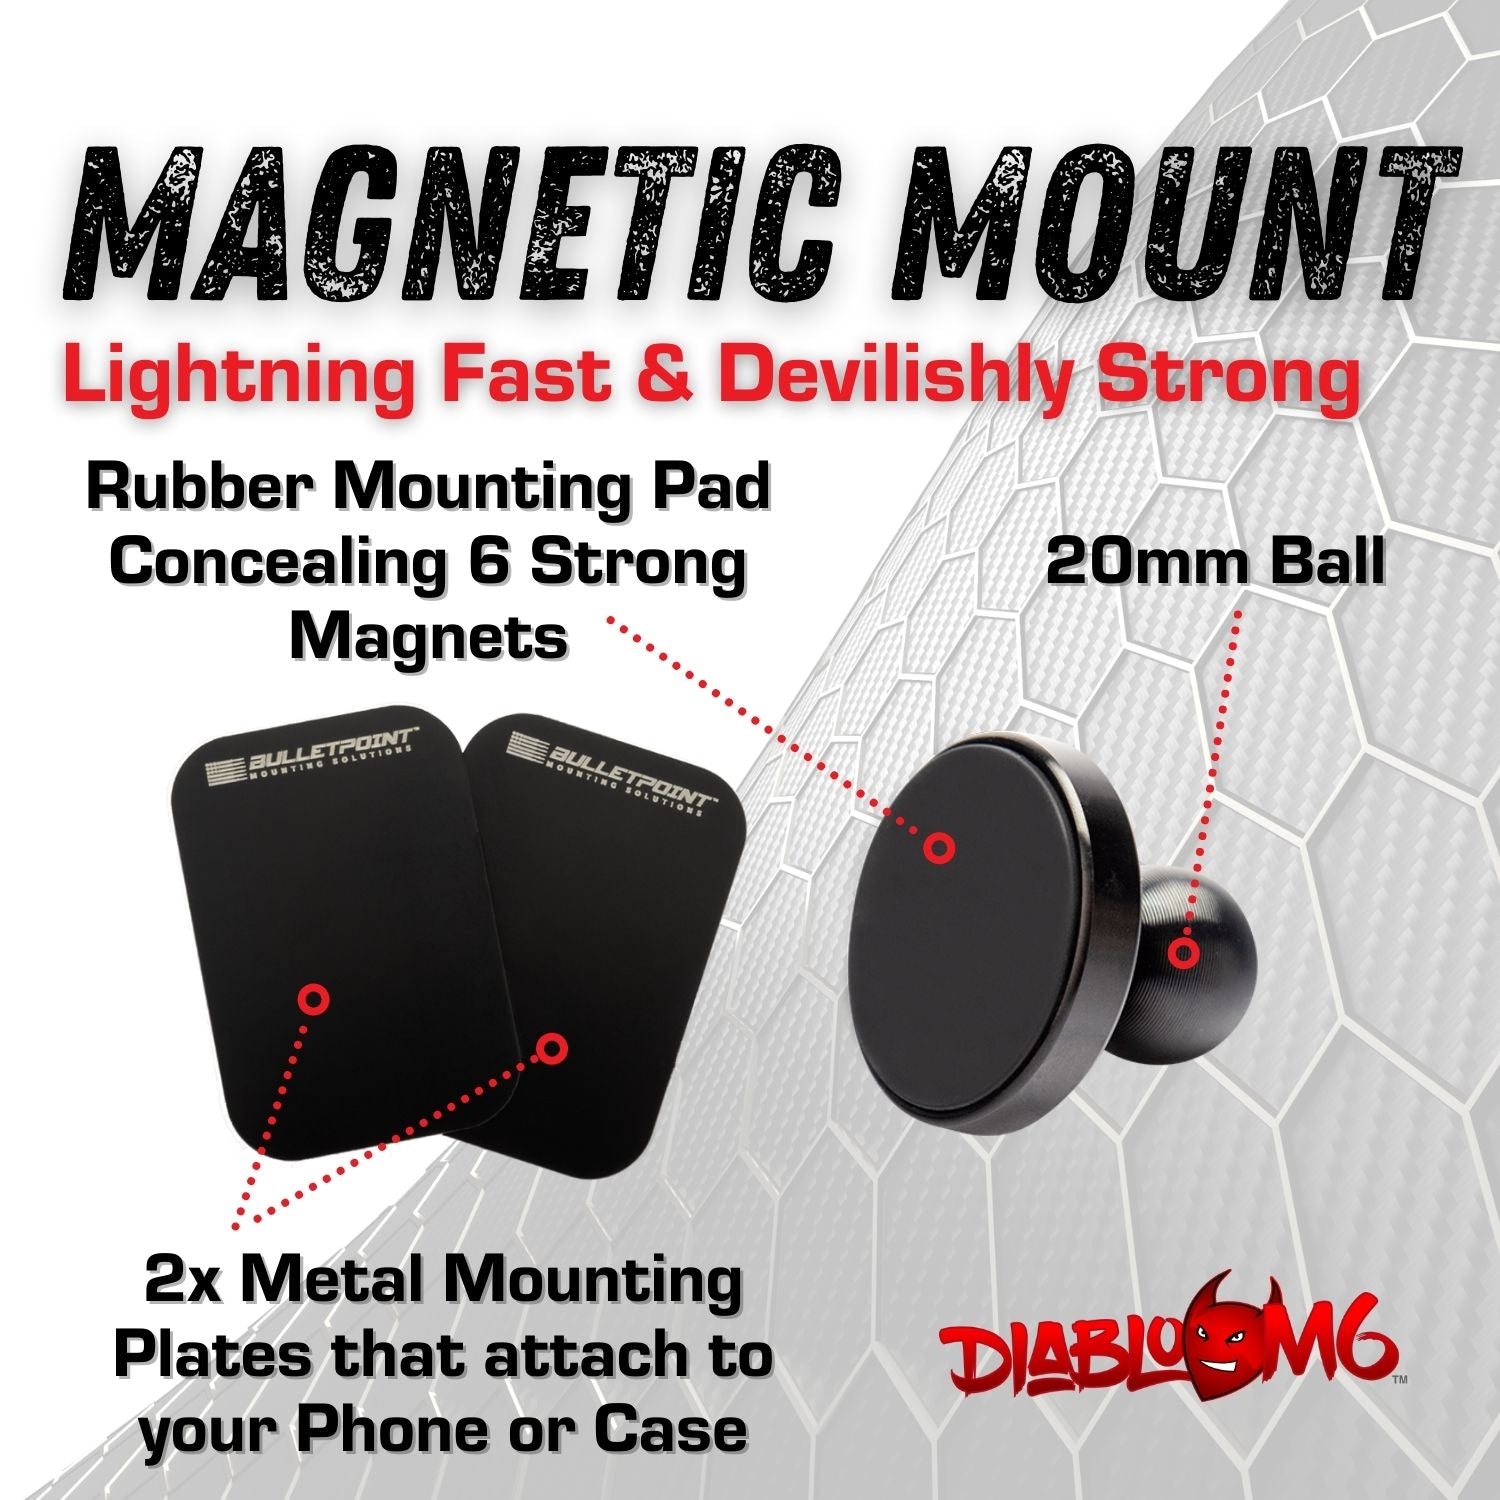 Carbon Fiber/Kevlar Arm and DiabloM6 Magnetic Phone Mount Holder